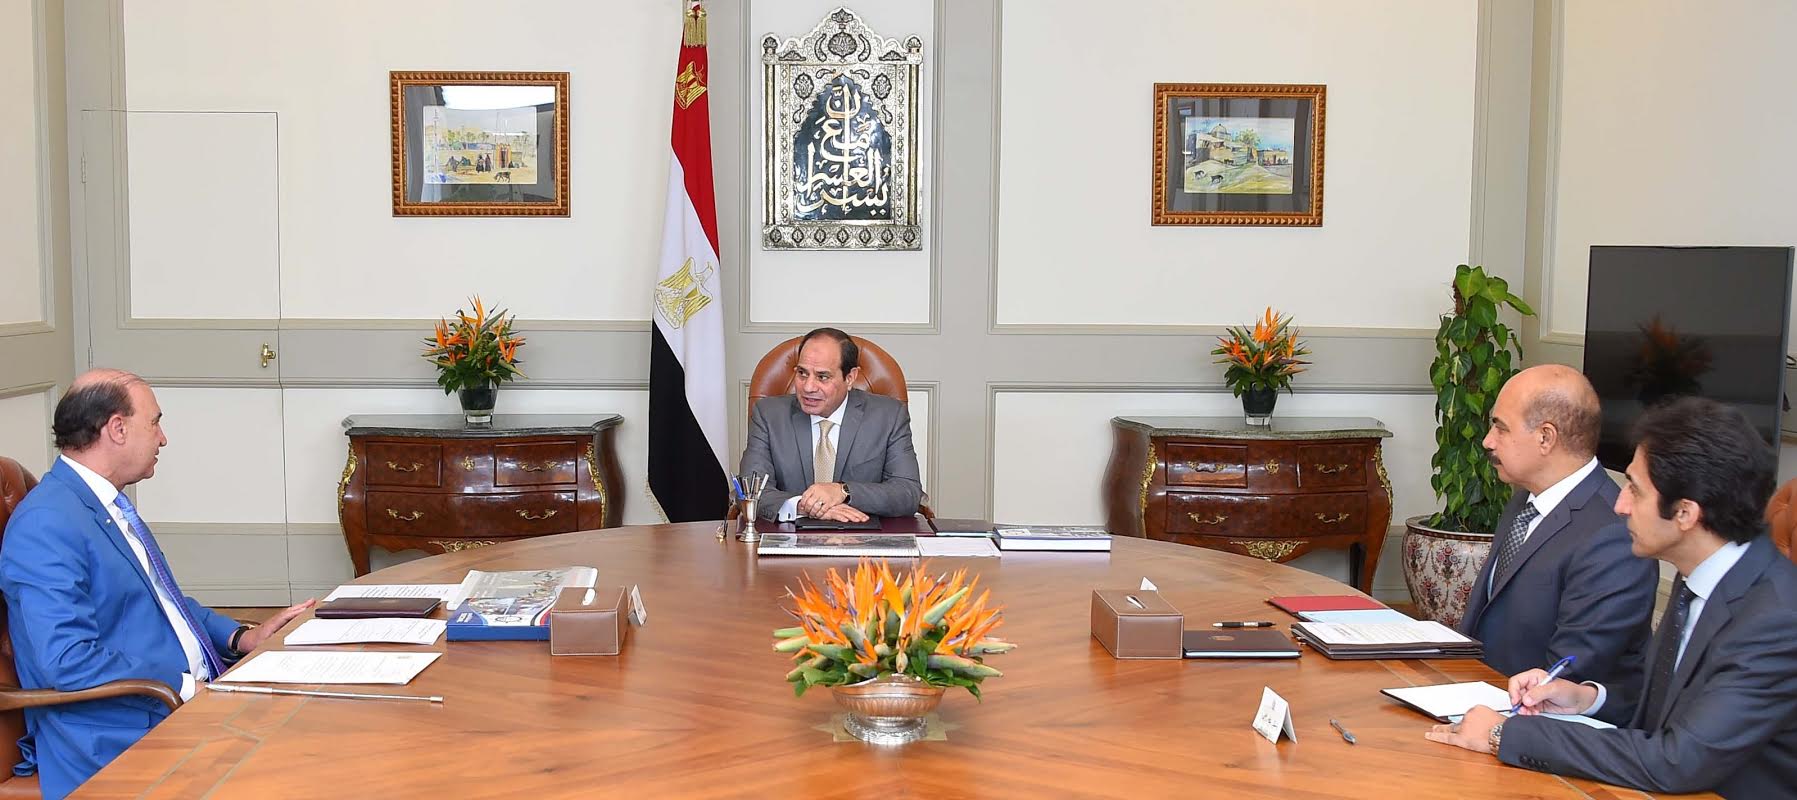  الرئيس عبد الفتاح السيسي يجتمع مع الفريق مهاب مميش